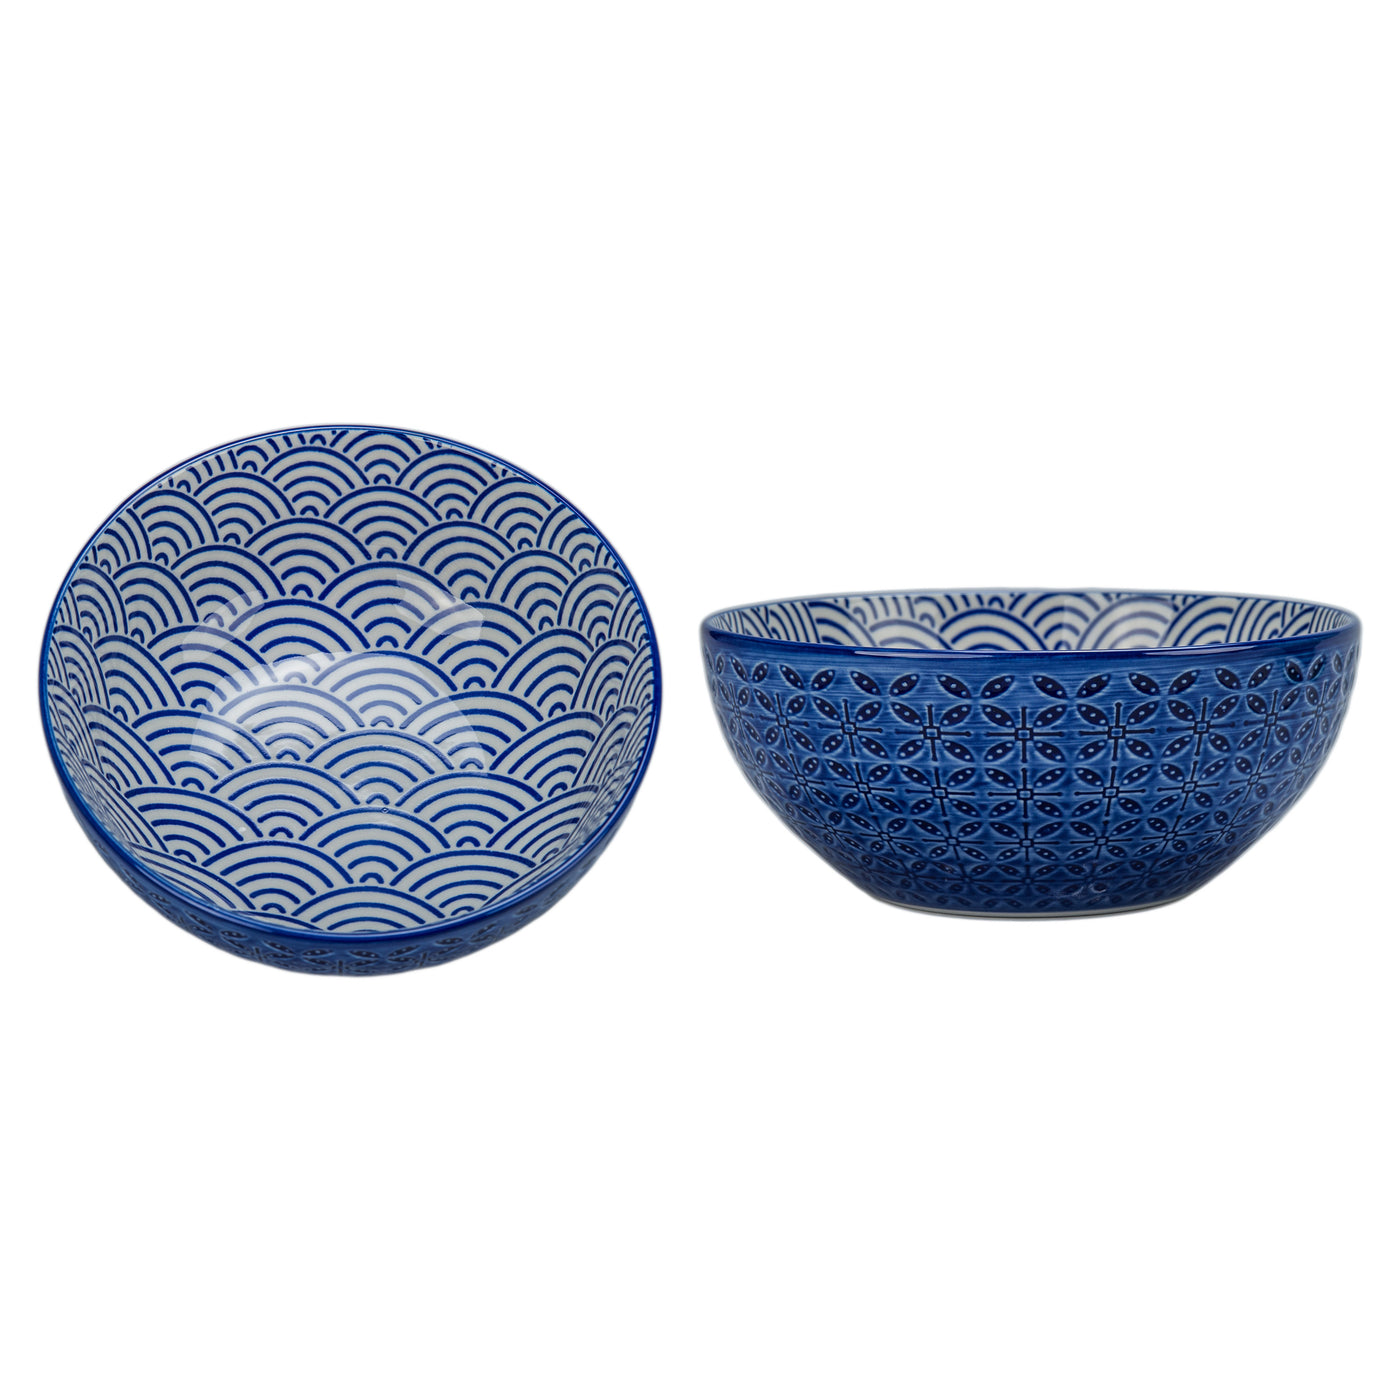 Bowl Redondo Diseños (Azul) Pequeño De Porcelana